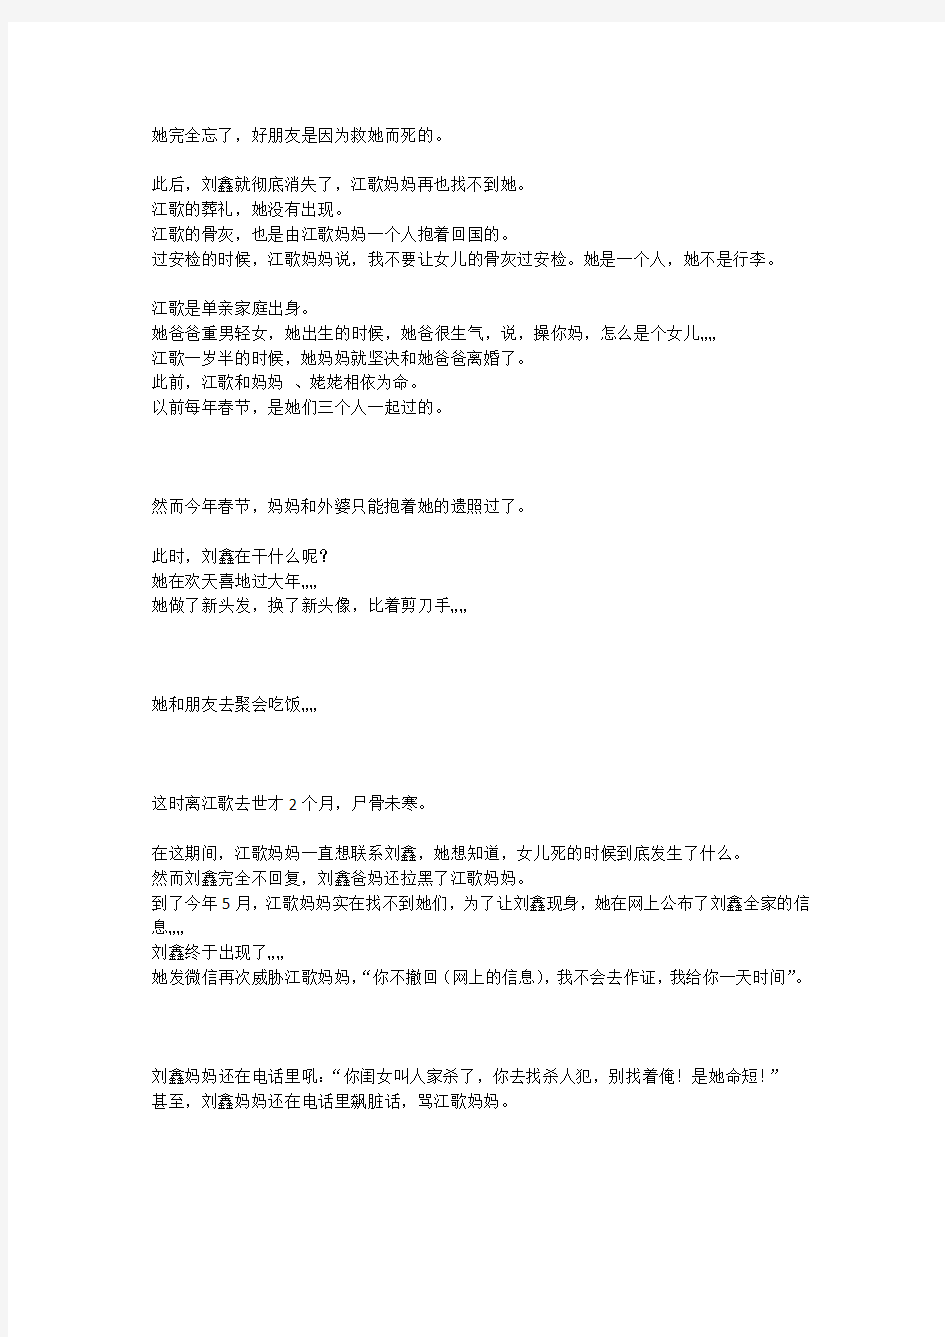 关于日本留学生江歌被杀害的事件,知乎网友提了个问题：